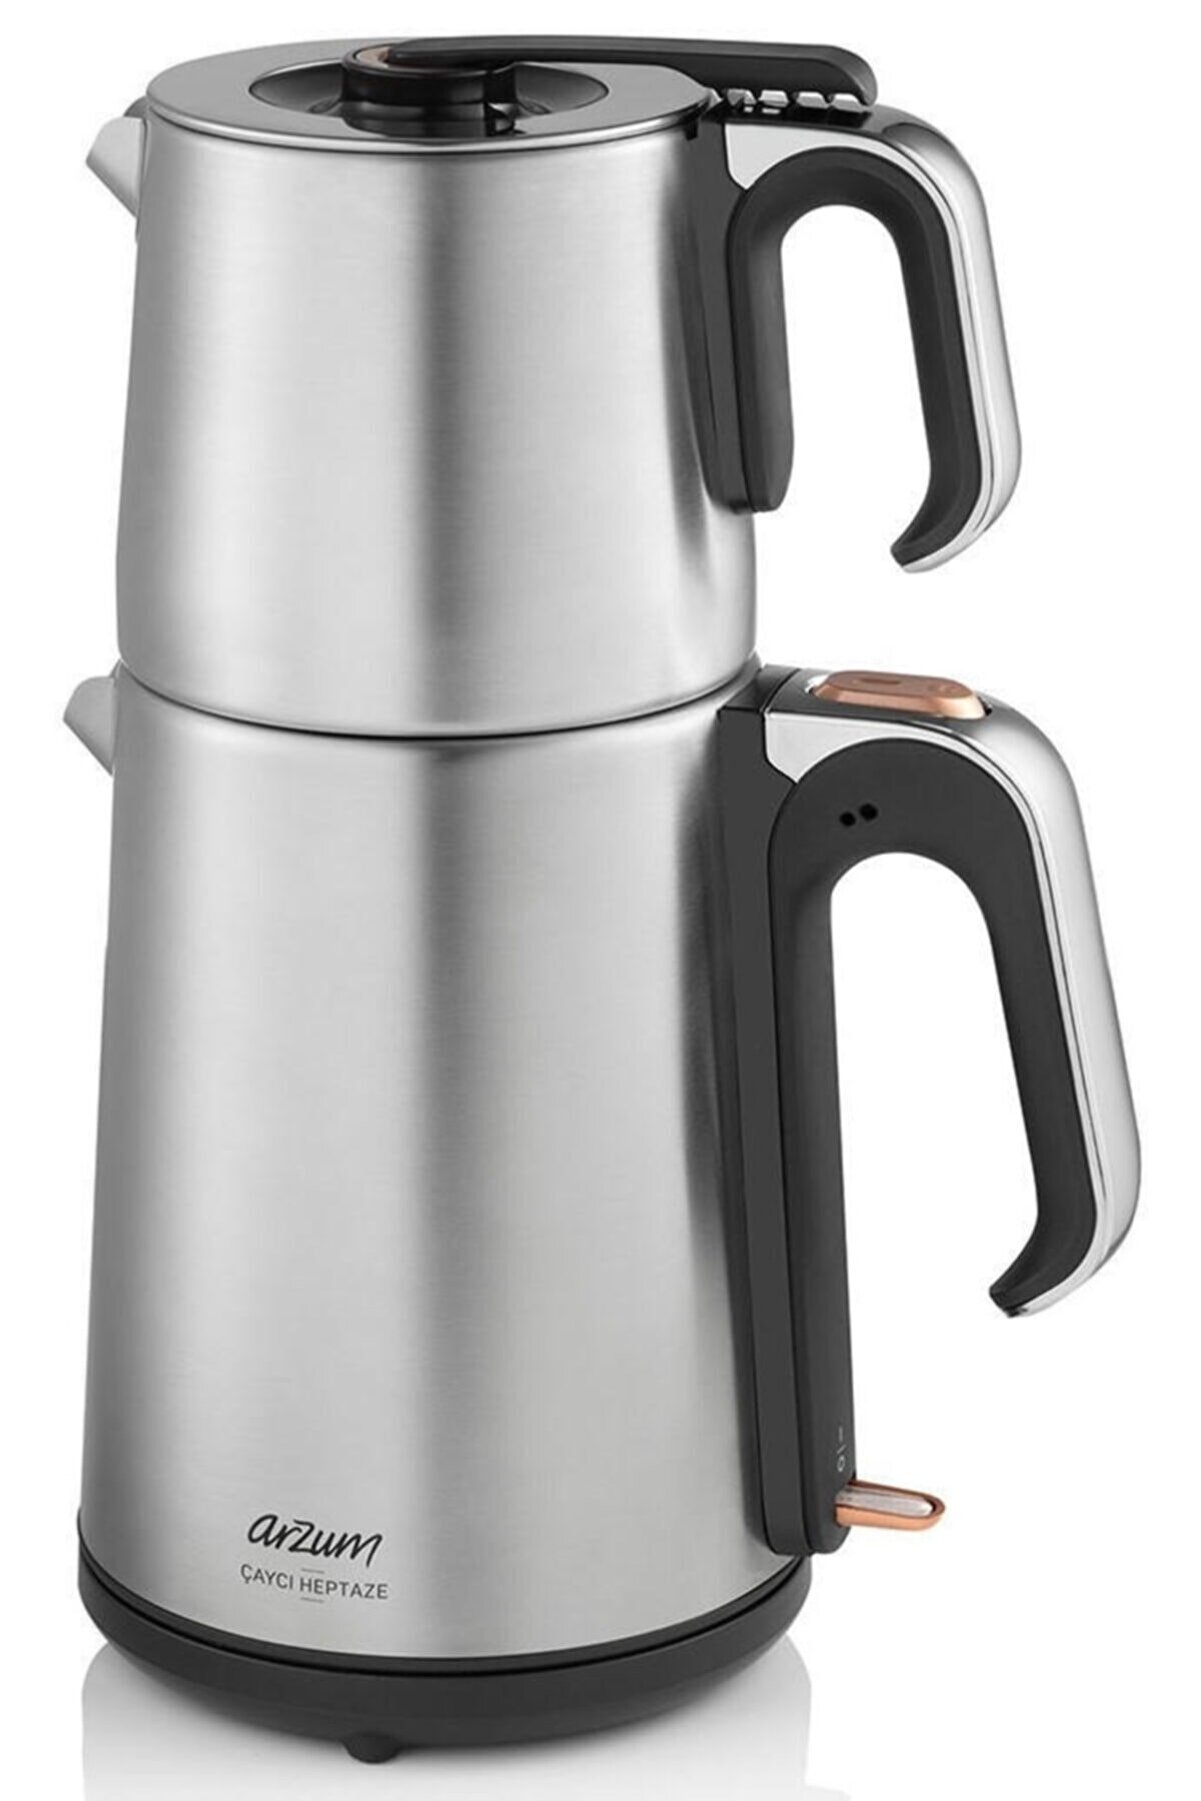 Arzum Ar3023 Çaycı Heptaze Paslanmaz Çelik Çay Makinesi - Inox